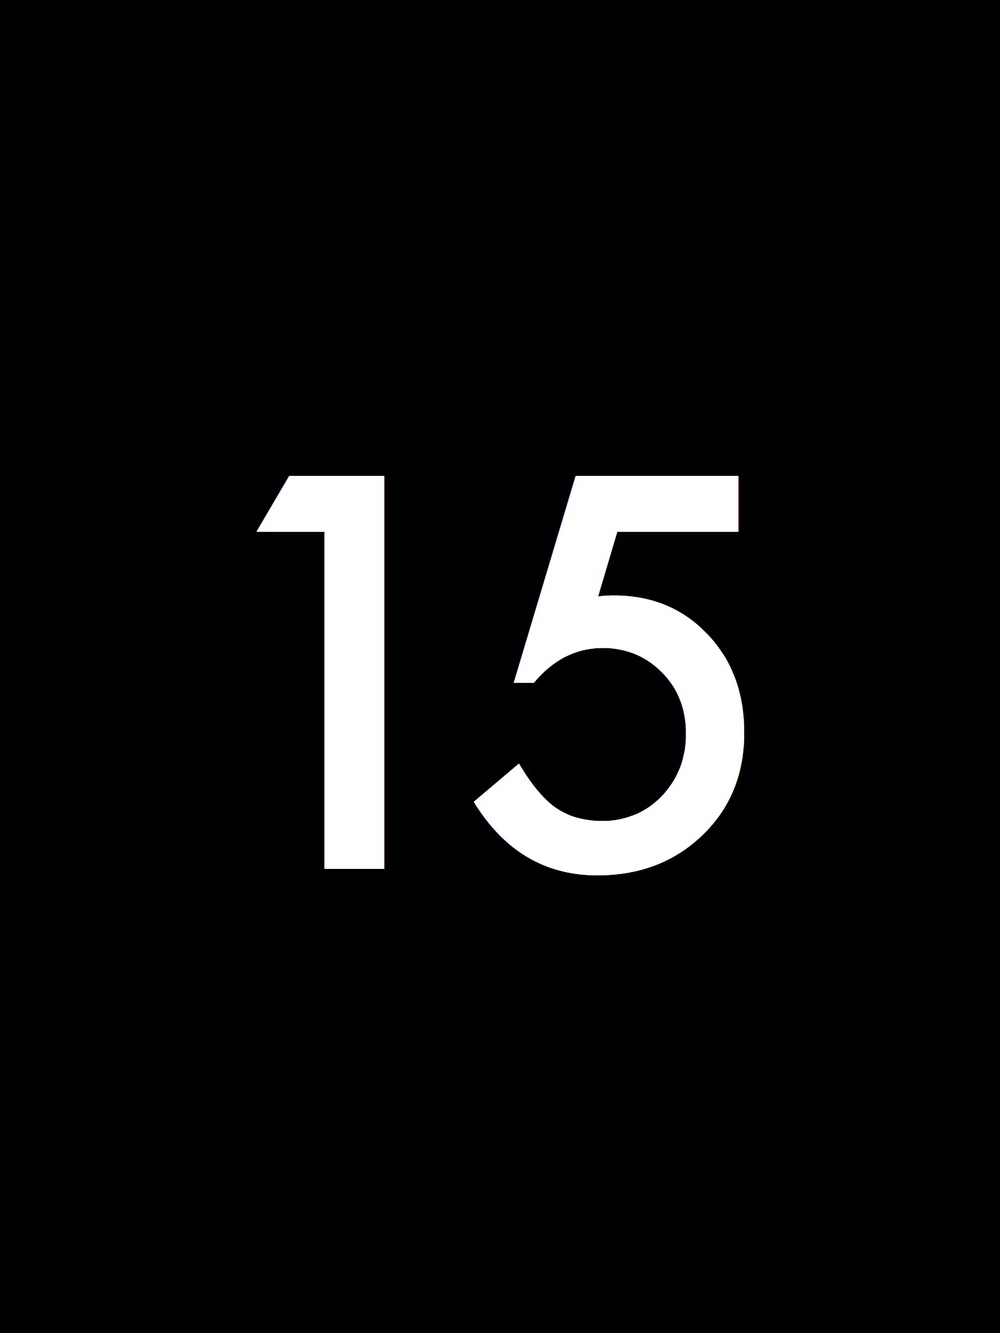 15. Цифра 15. Цифра 15 на черном фоне. Обои с цифрой 15. 14-15 Цифры.